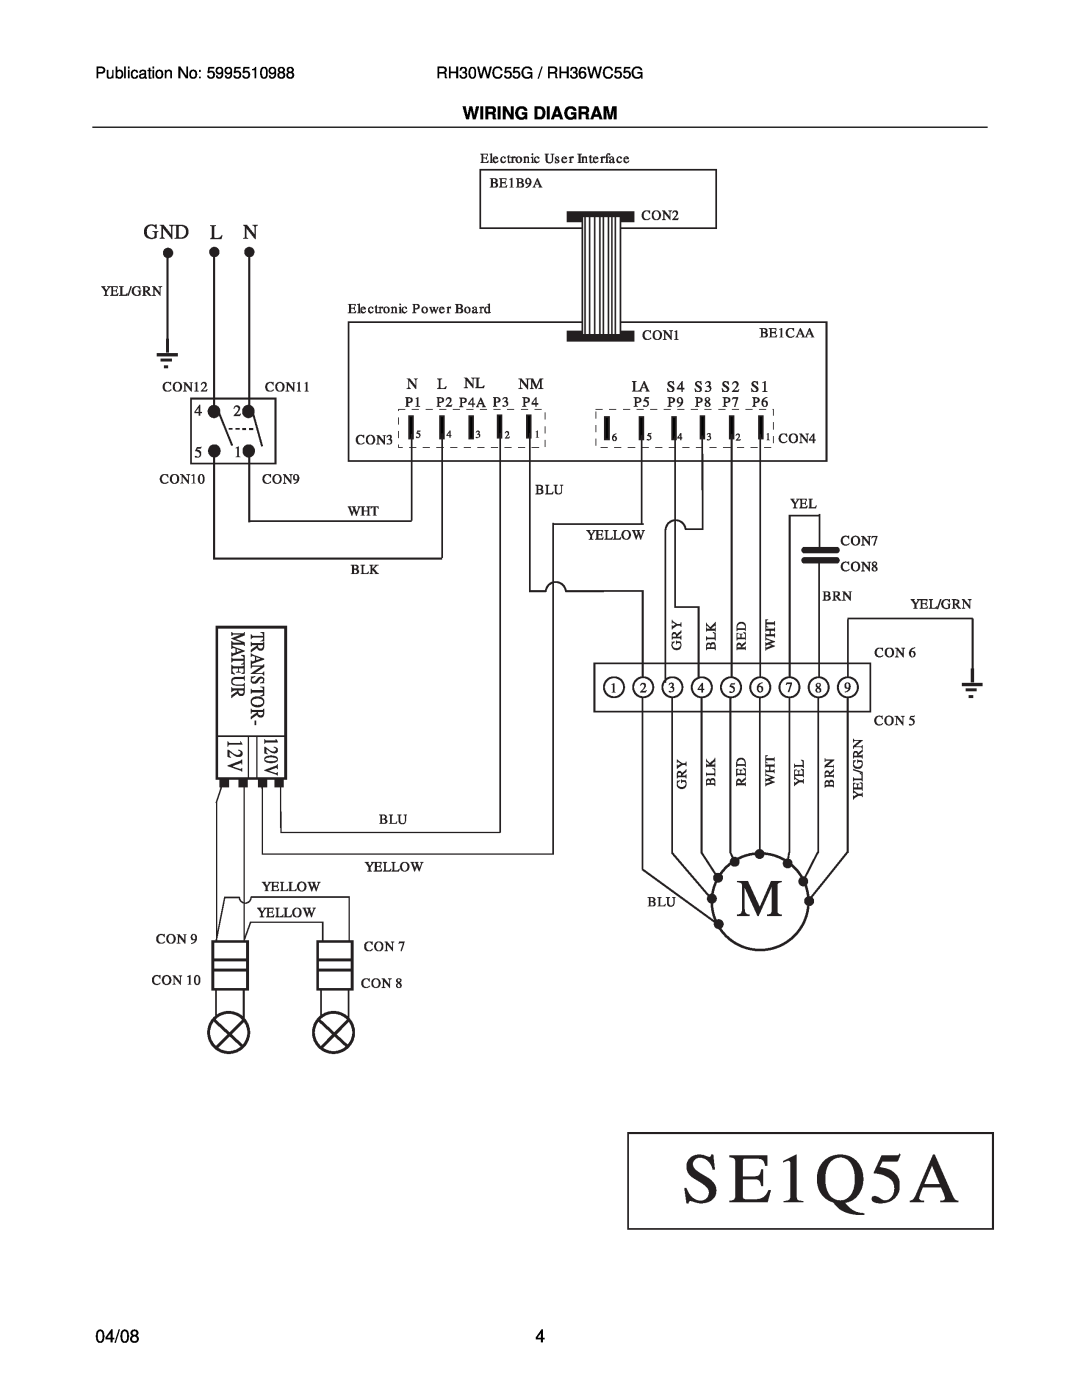 Electrolux RH36WC55GSA, RH30WC55GSA installation instructions Wiring Diagram, 04/08, RH30WC55G / RH36WC55G 